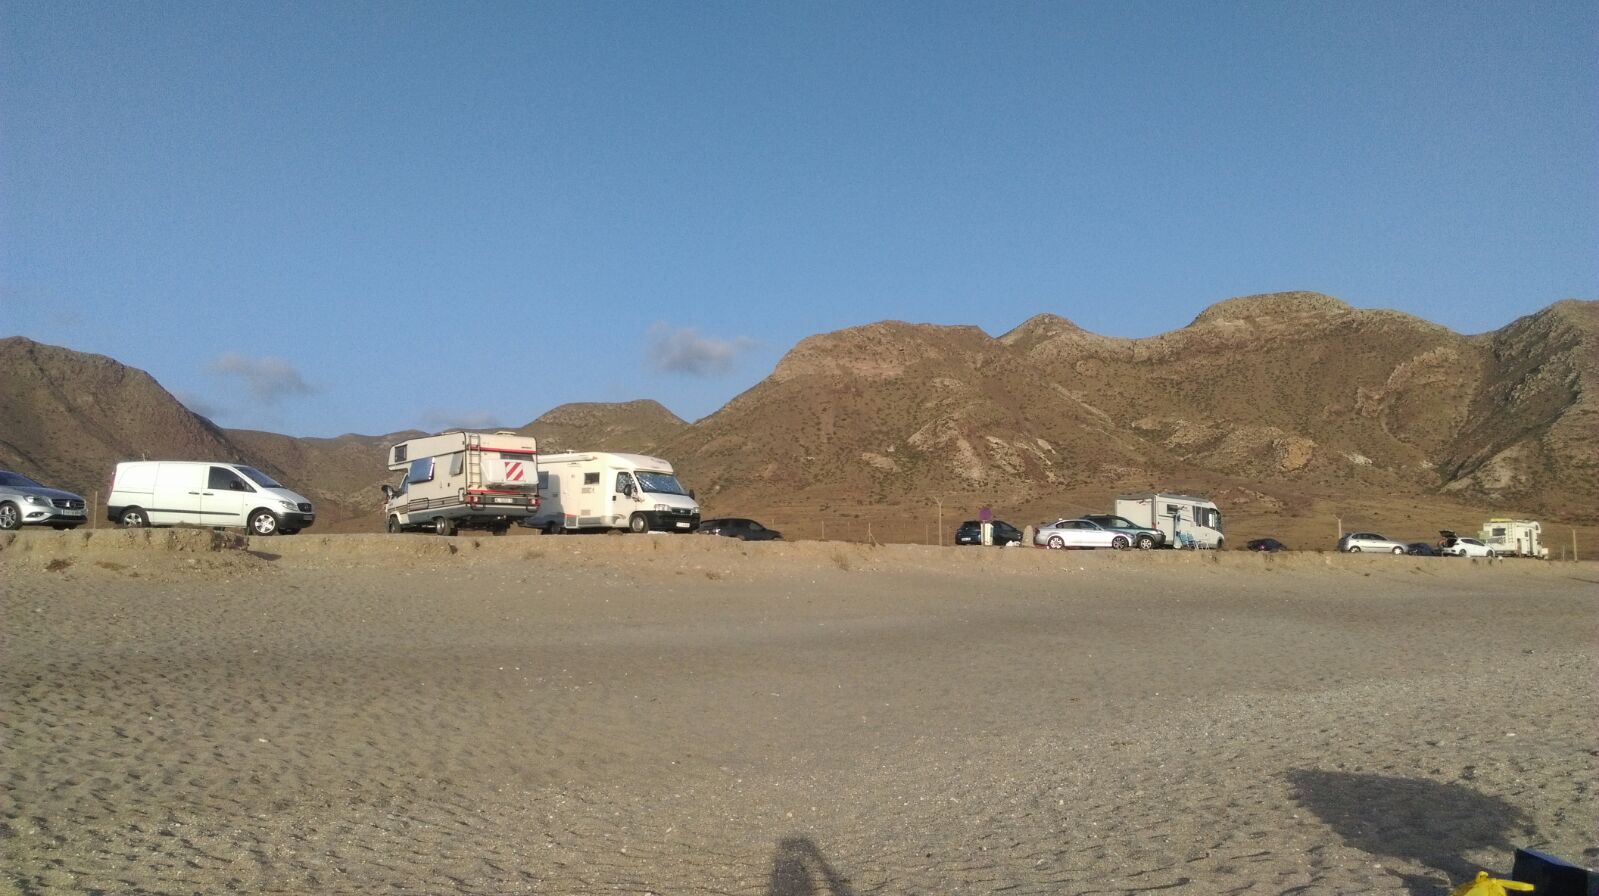 Playa de Almadraba'in fotoğrafı çok temiz temizlik seviyesi ile